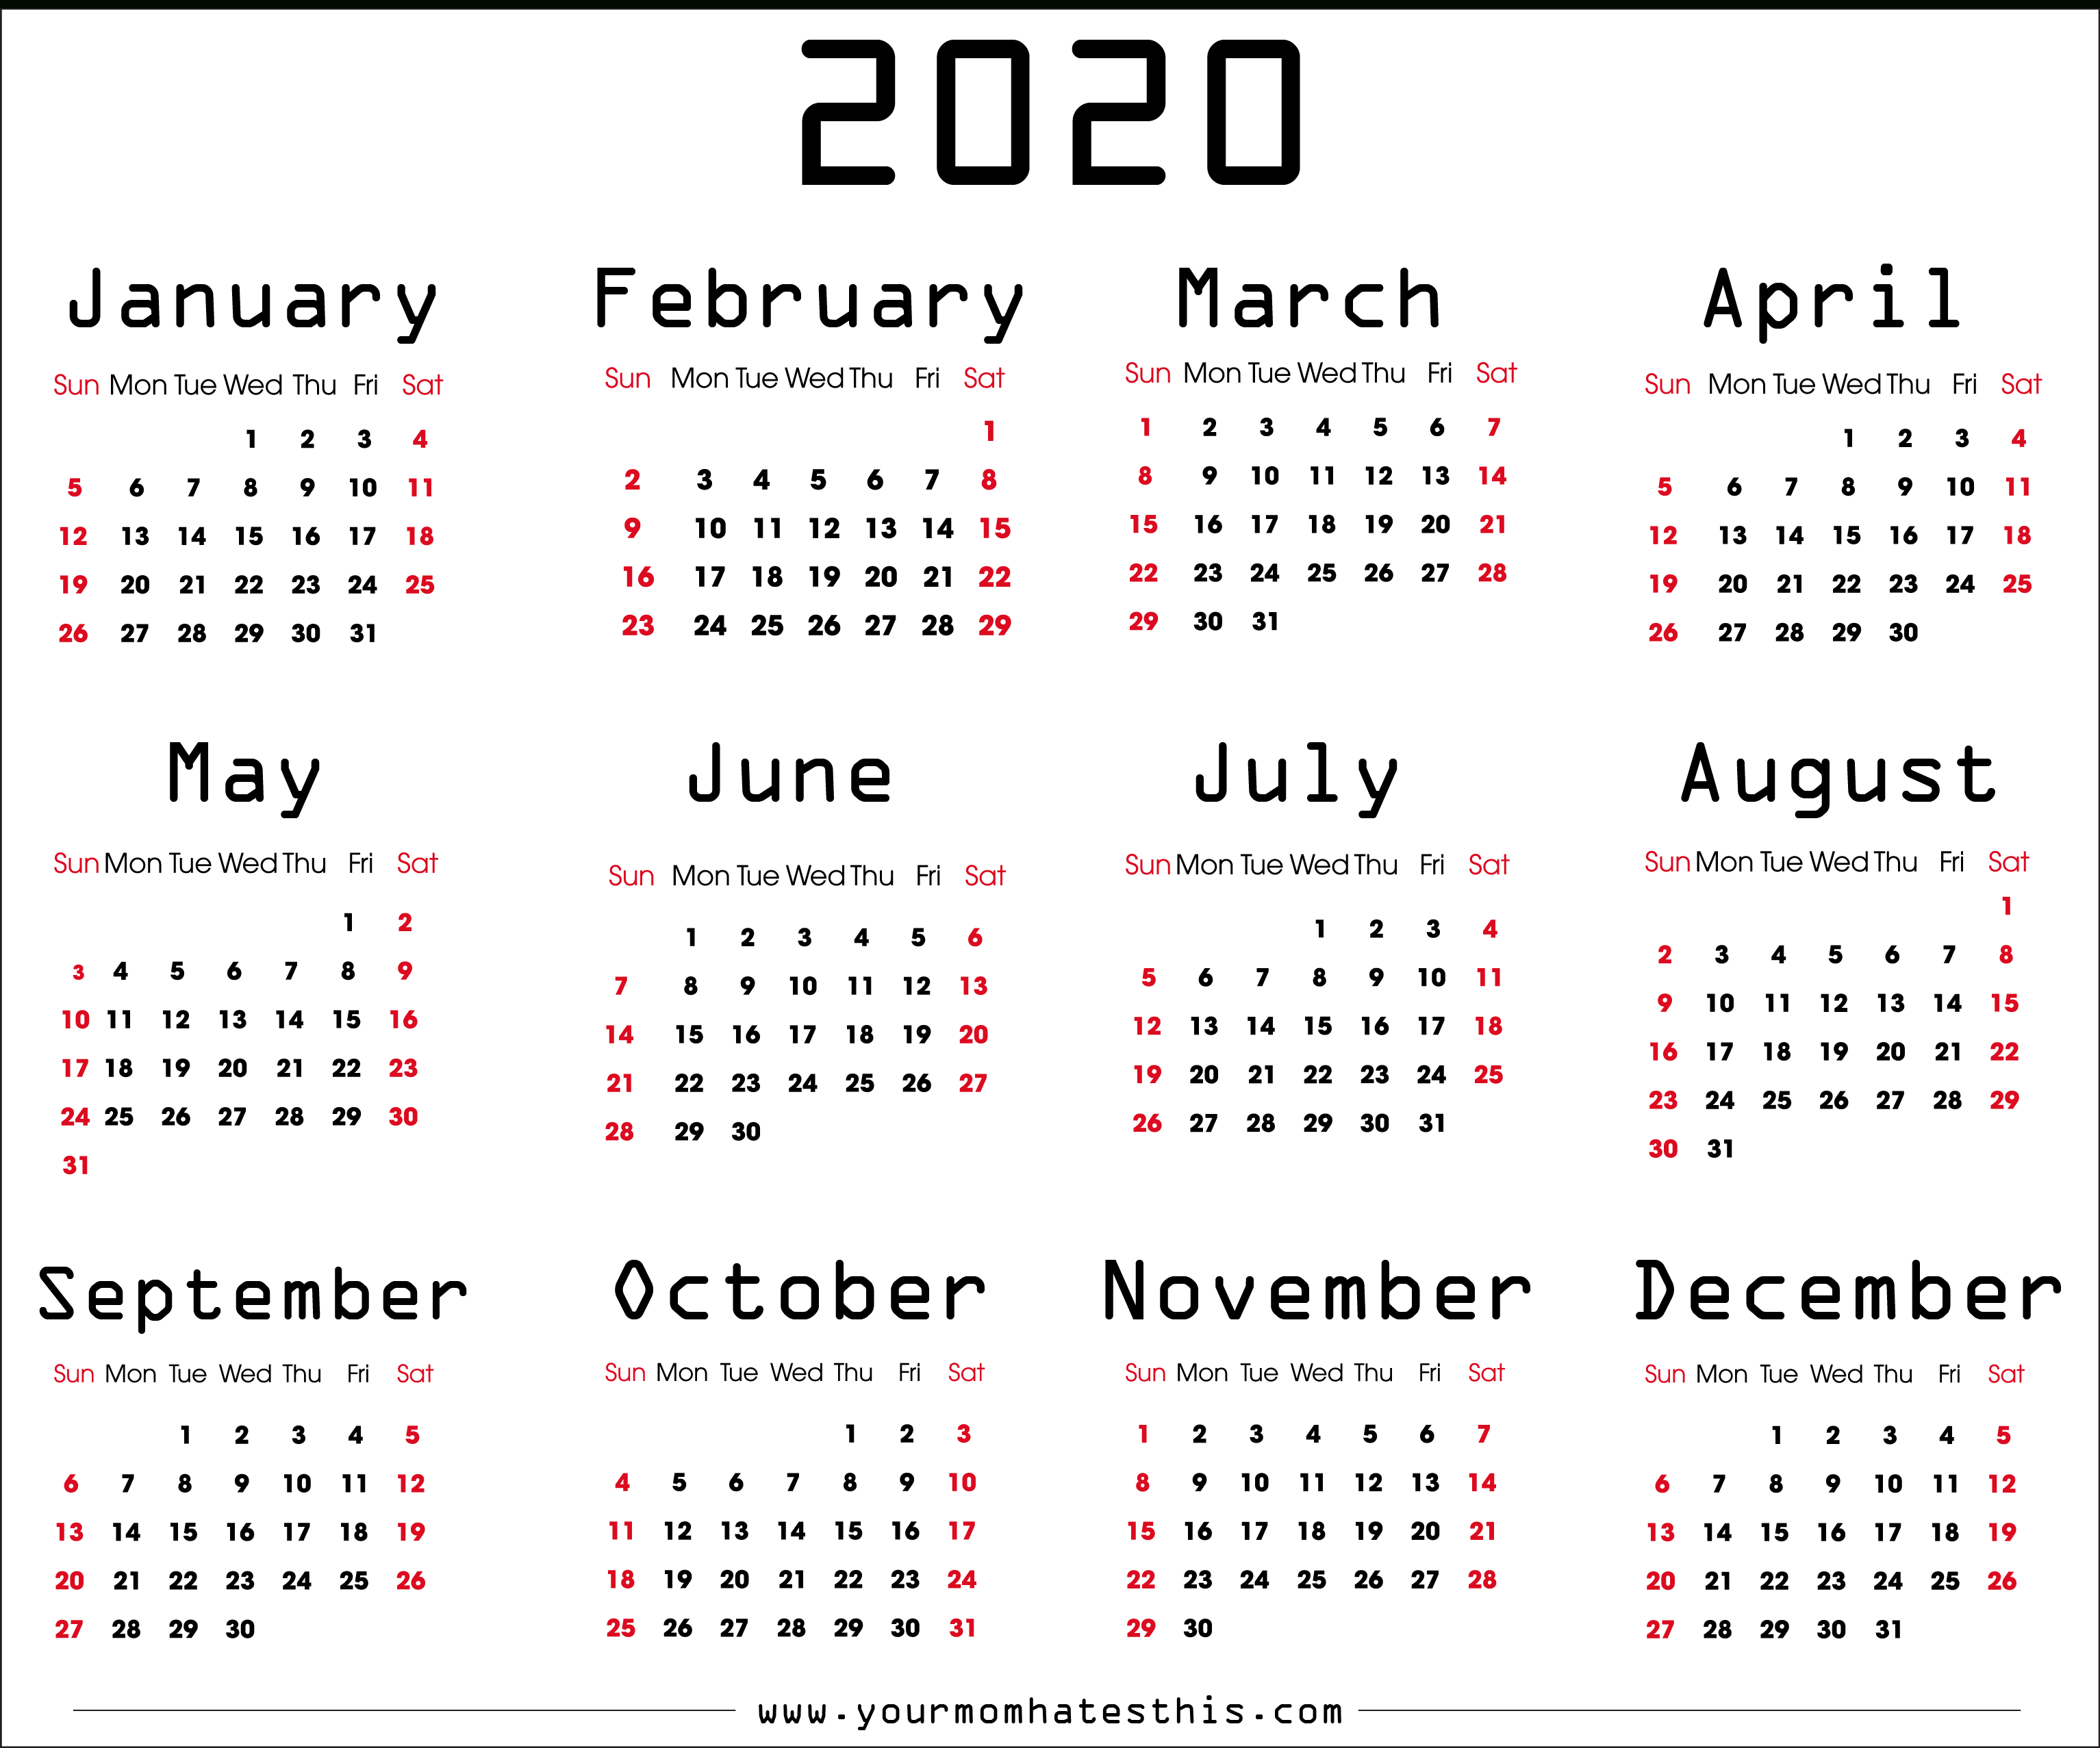 Calendar 2020 Xls - Wpa.wpart.co